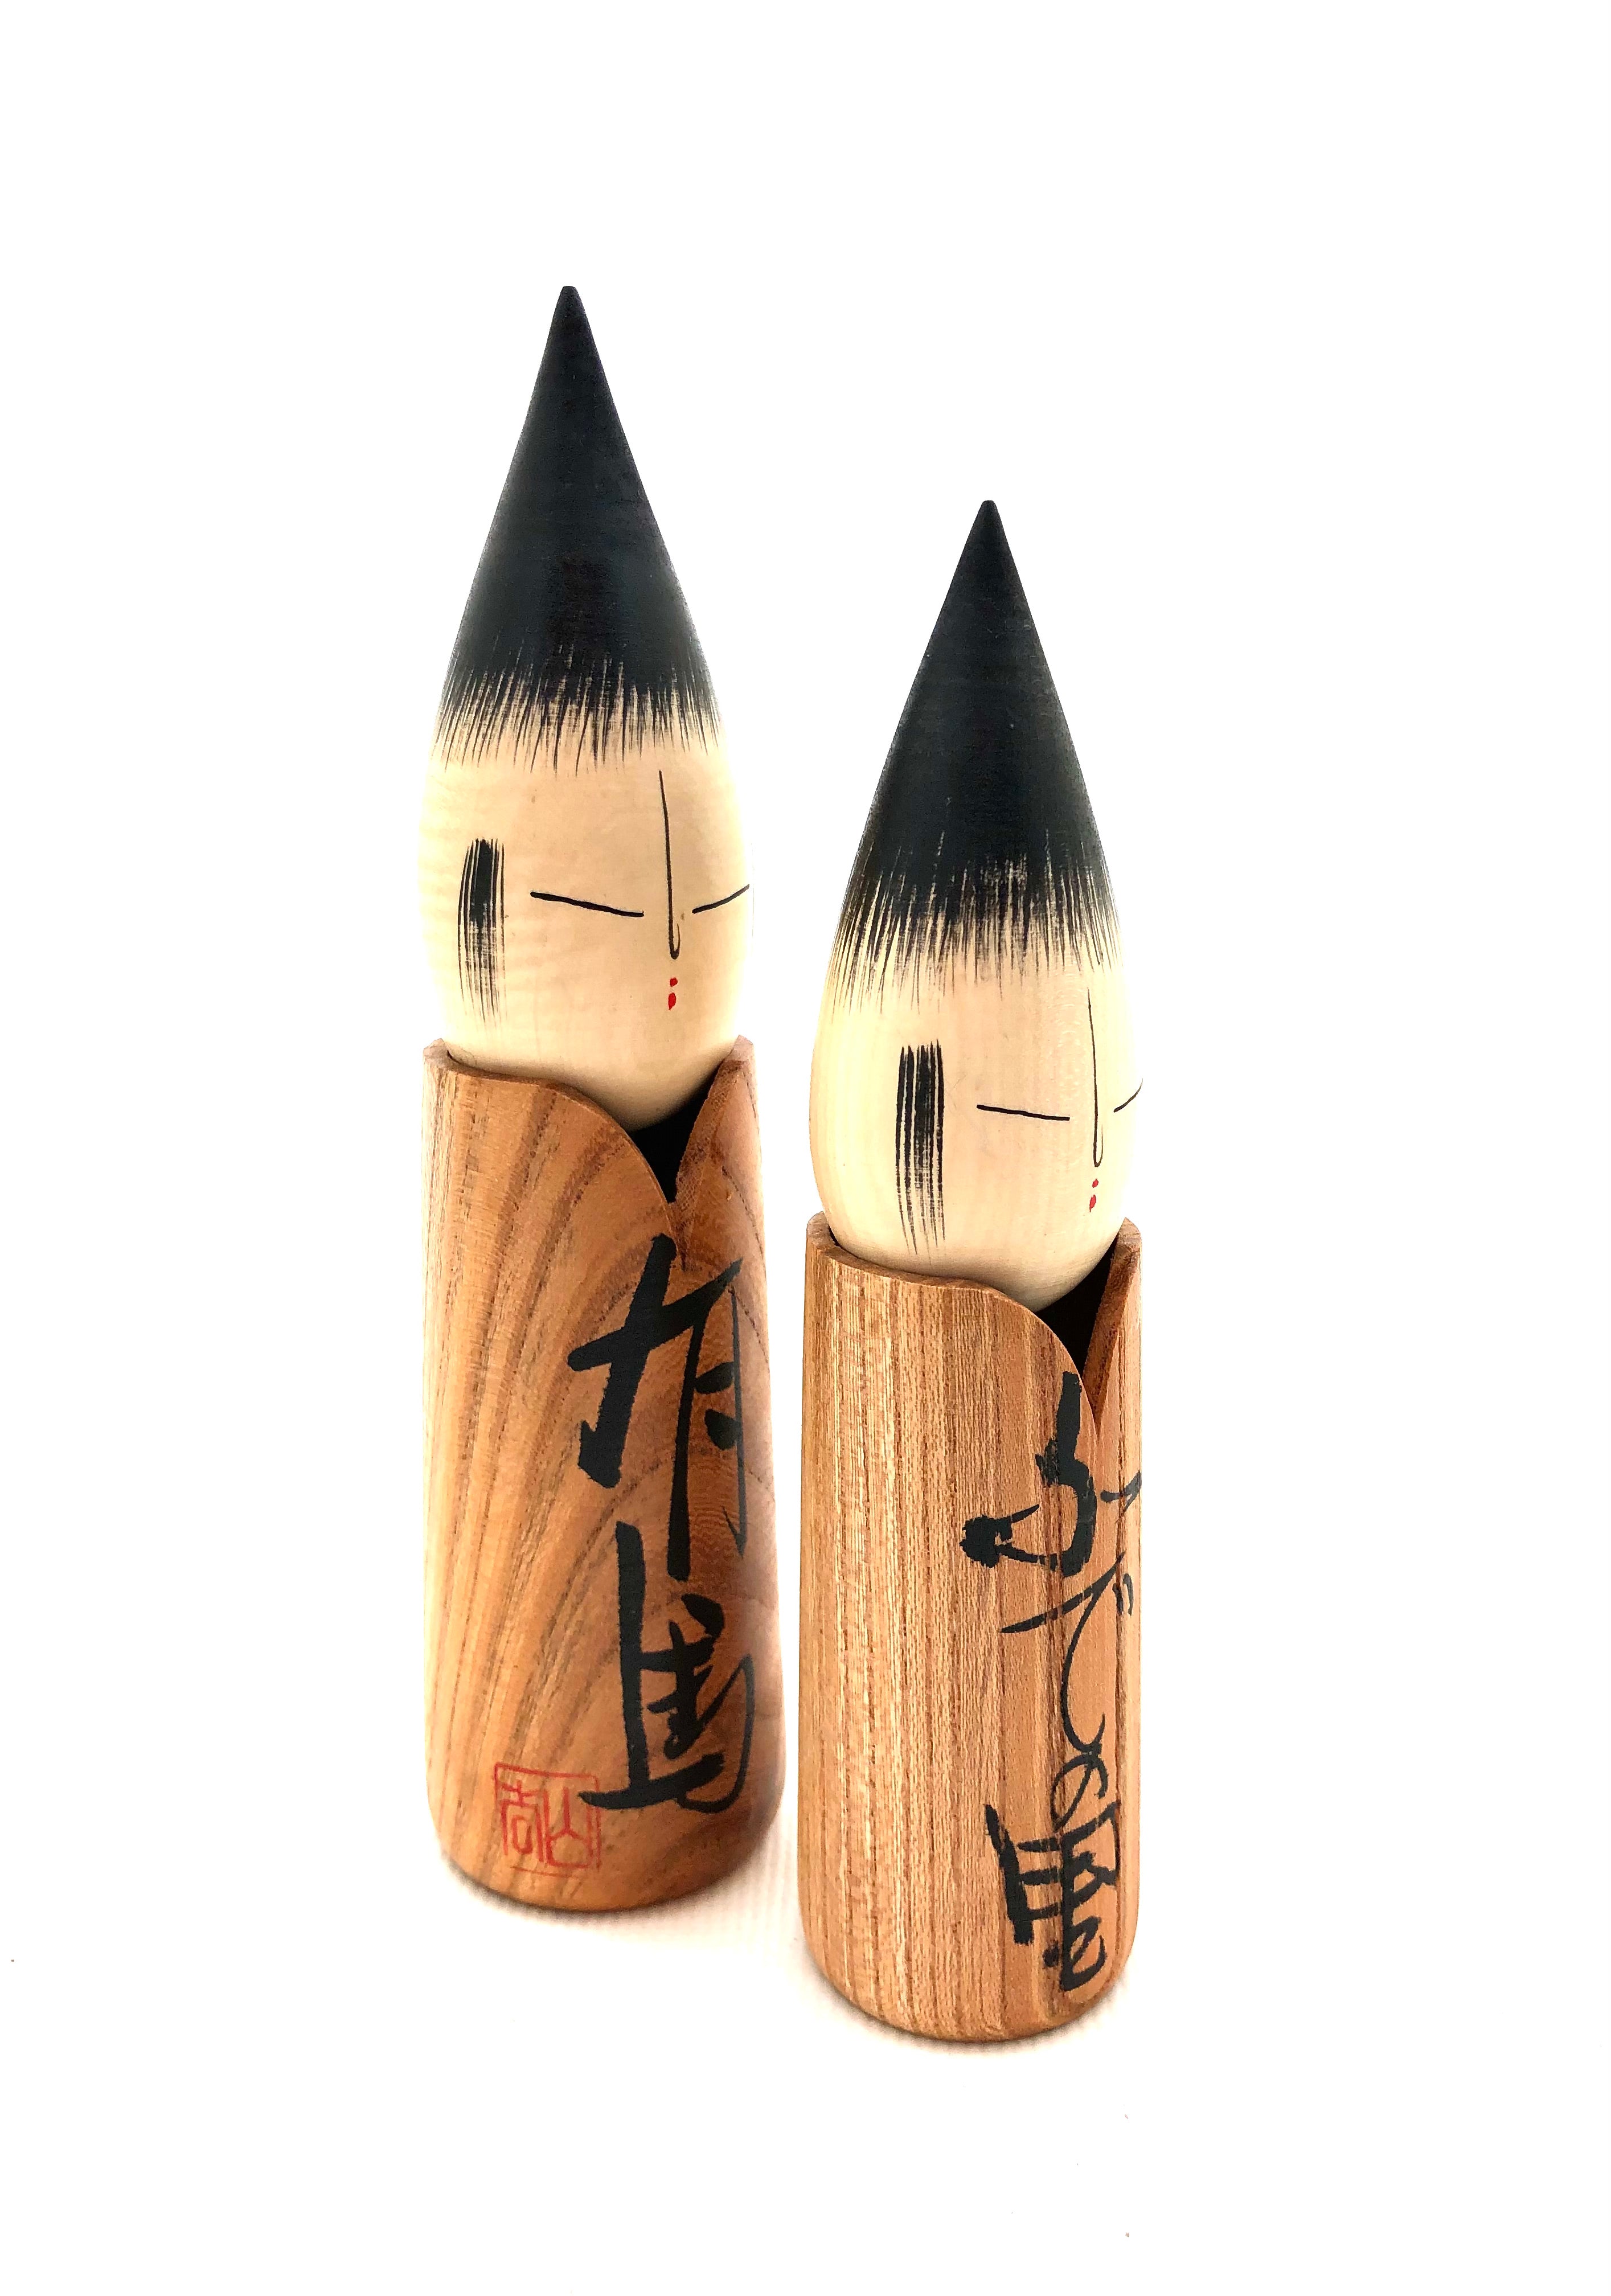 Japanese Modern Creative "Brush Kokeshi" by Shido Shouzan